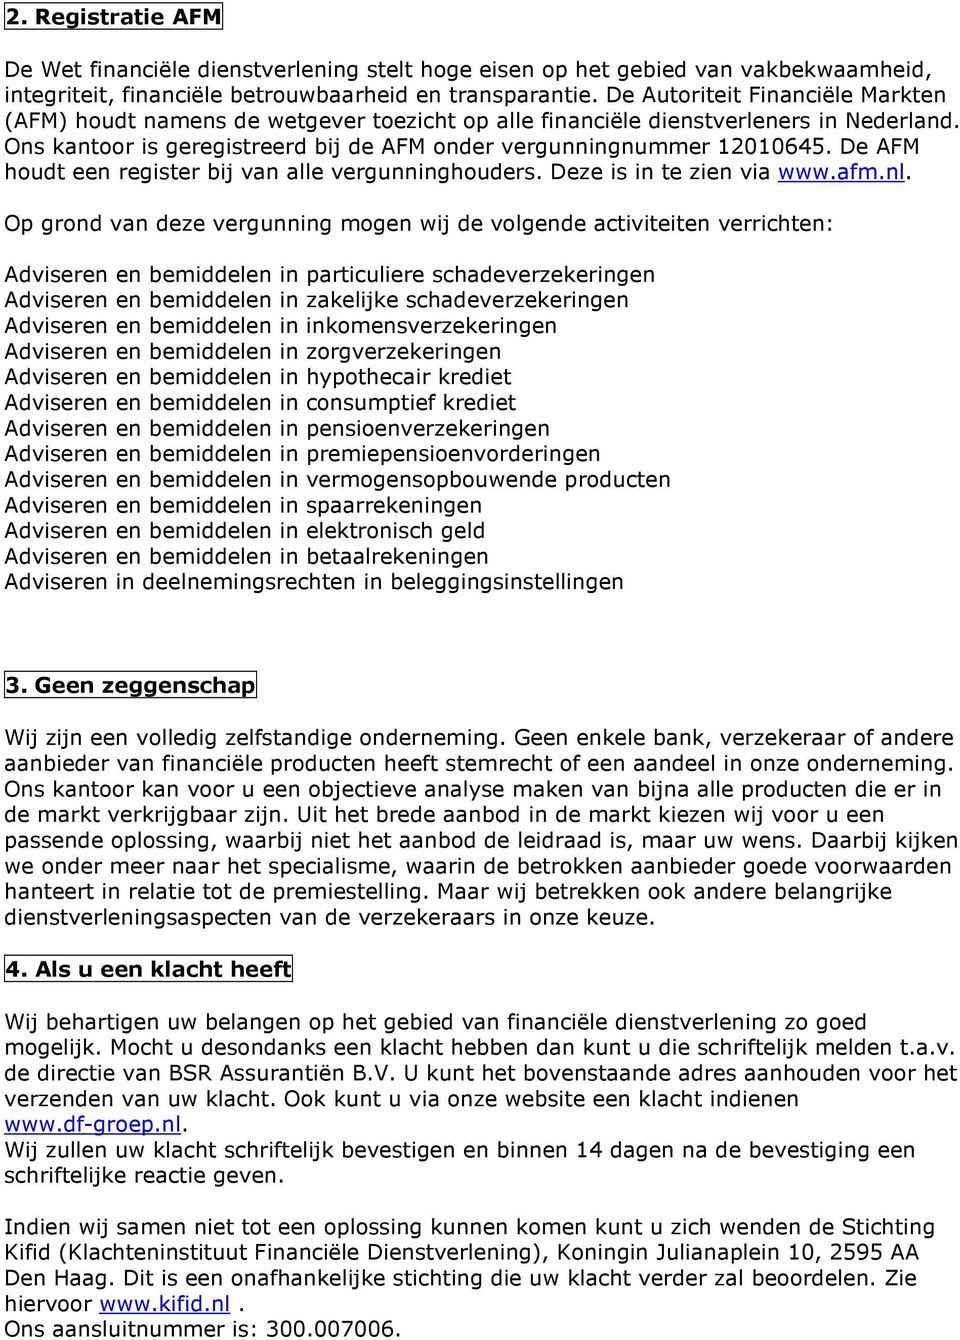 De AFM houdt een register bij van alle vergunninghouders. Deze is in te zien via www.afm.nl.